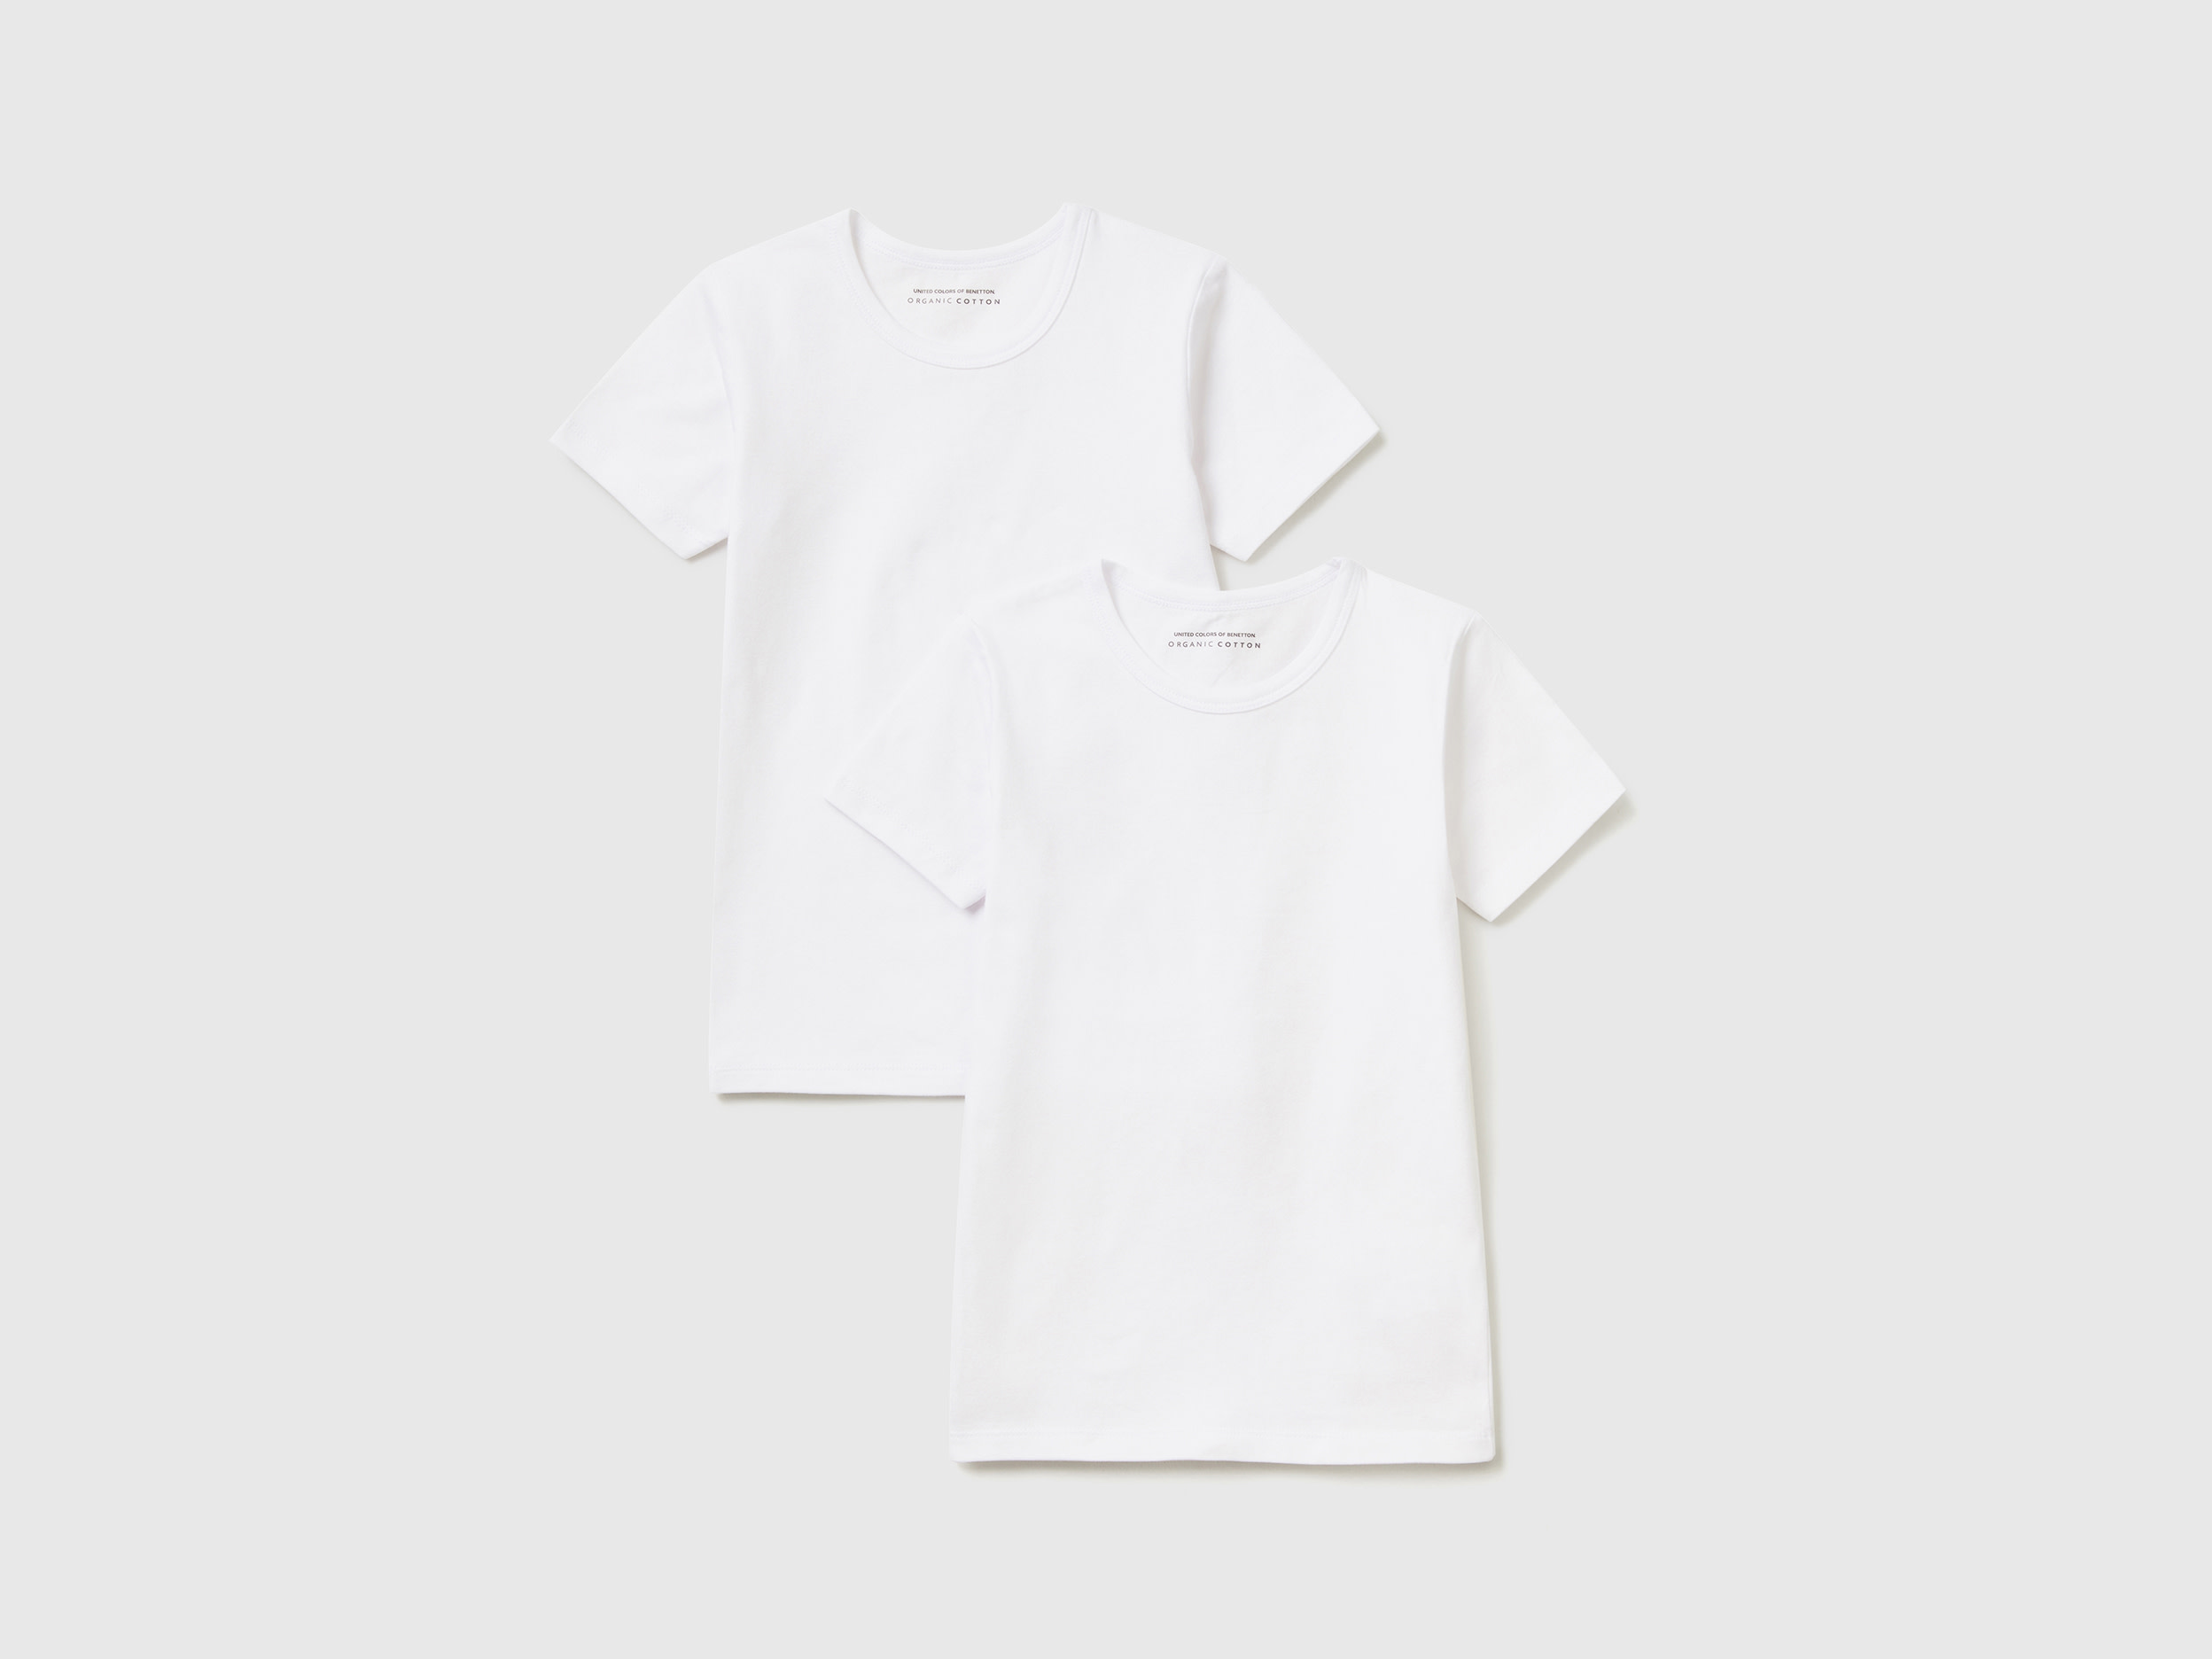 Benetton, Two Stretch Organic Cotton T-shirts, size XXS, White, Kids